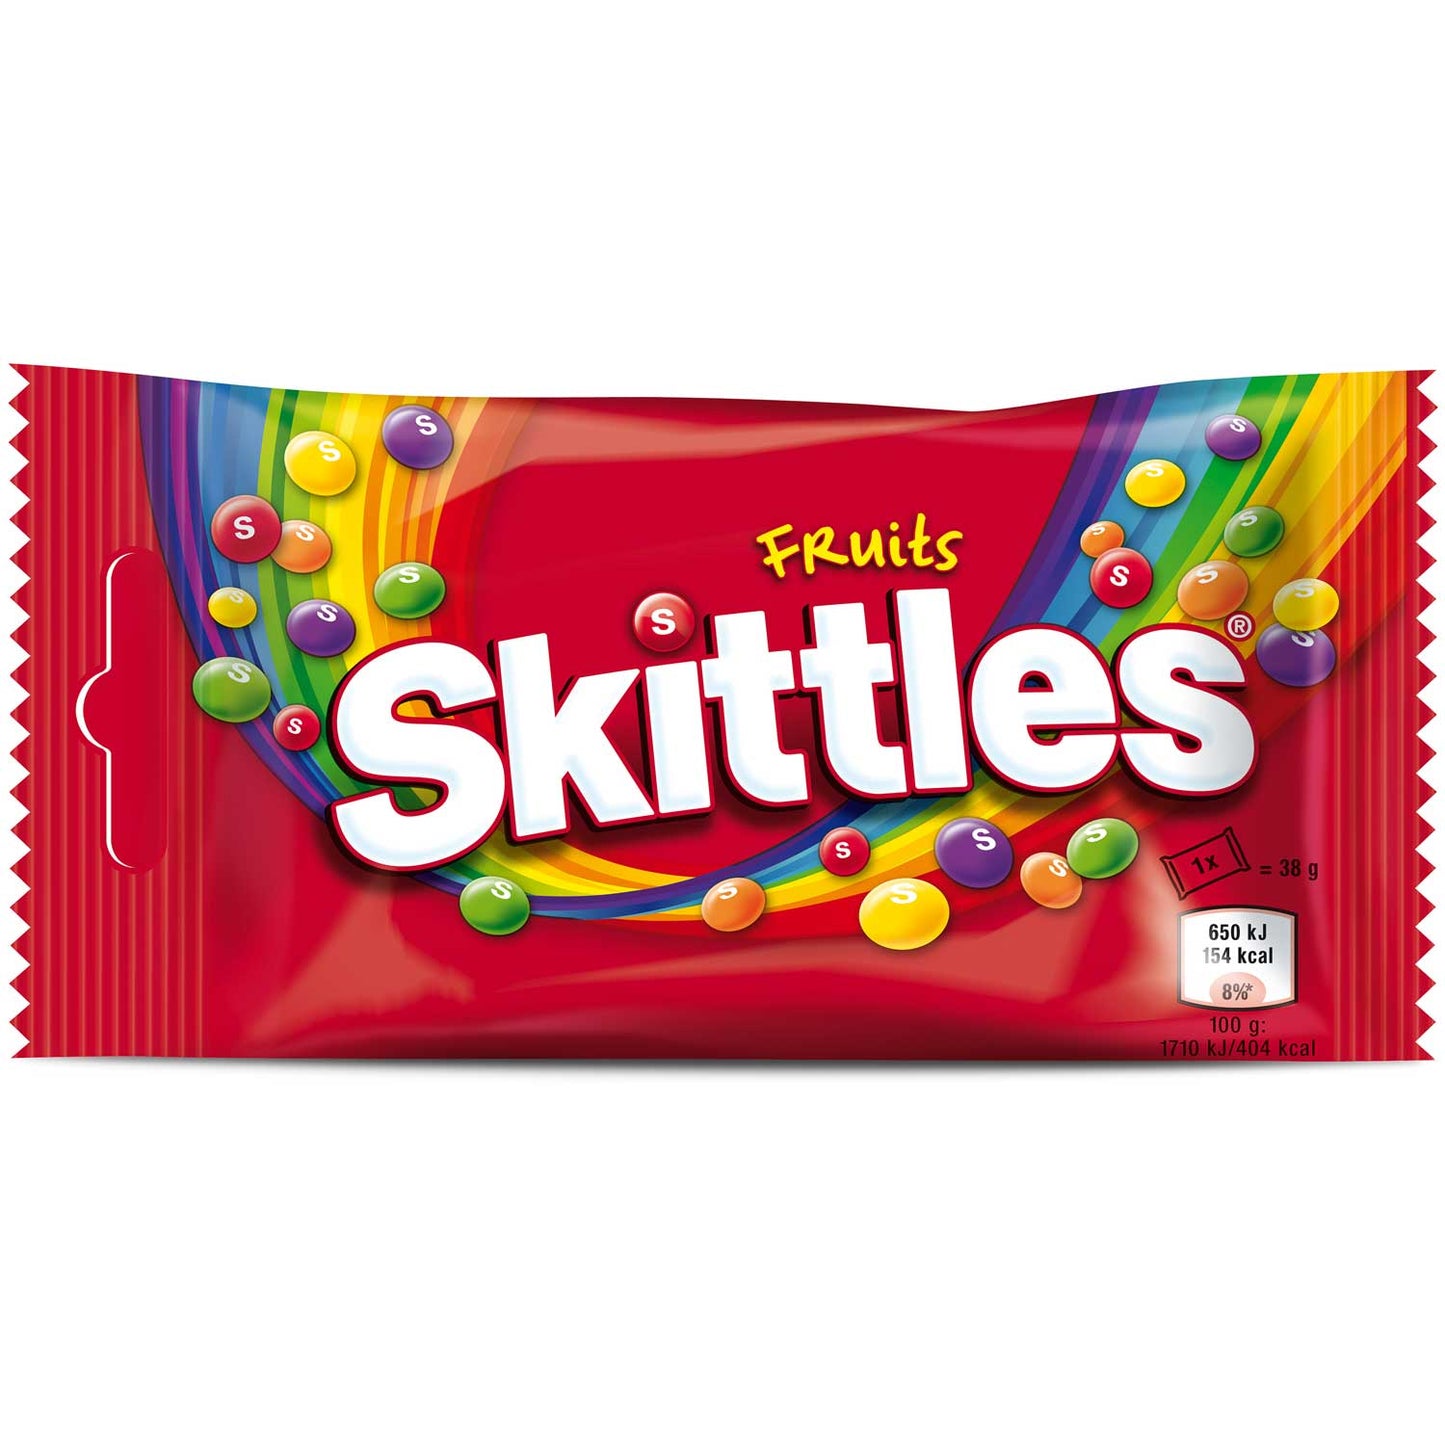 Skittles Muchero: 14x38g